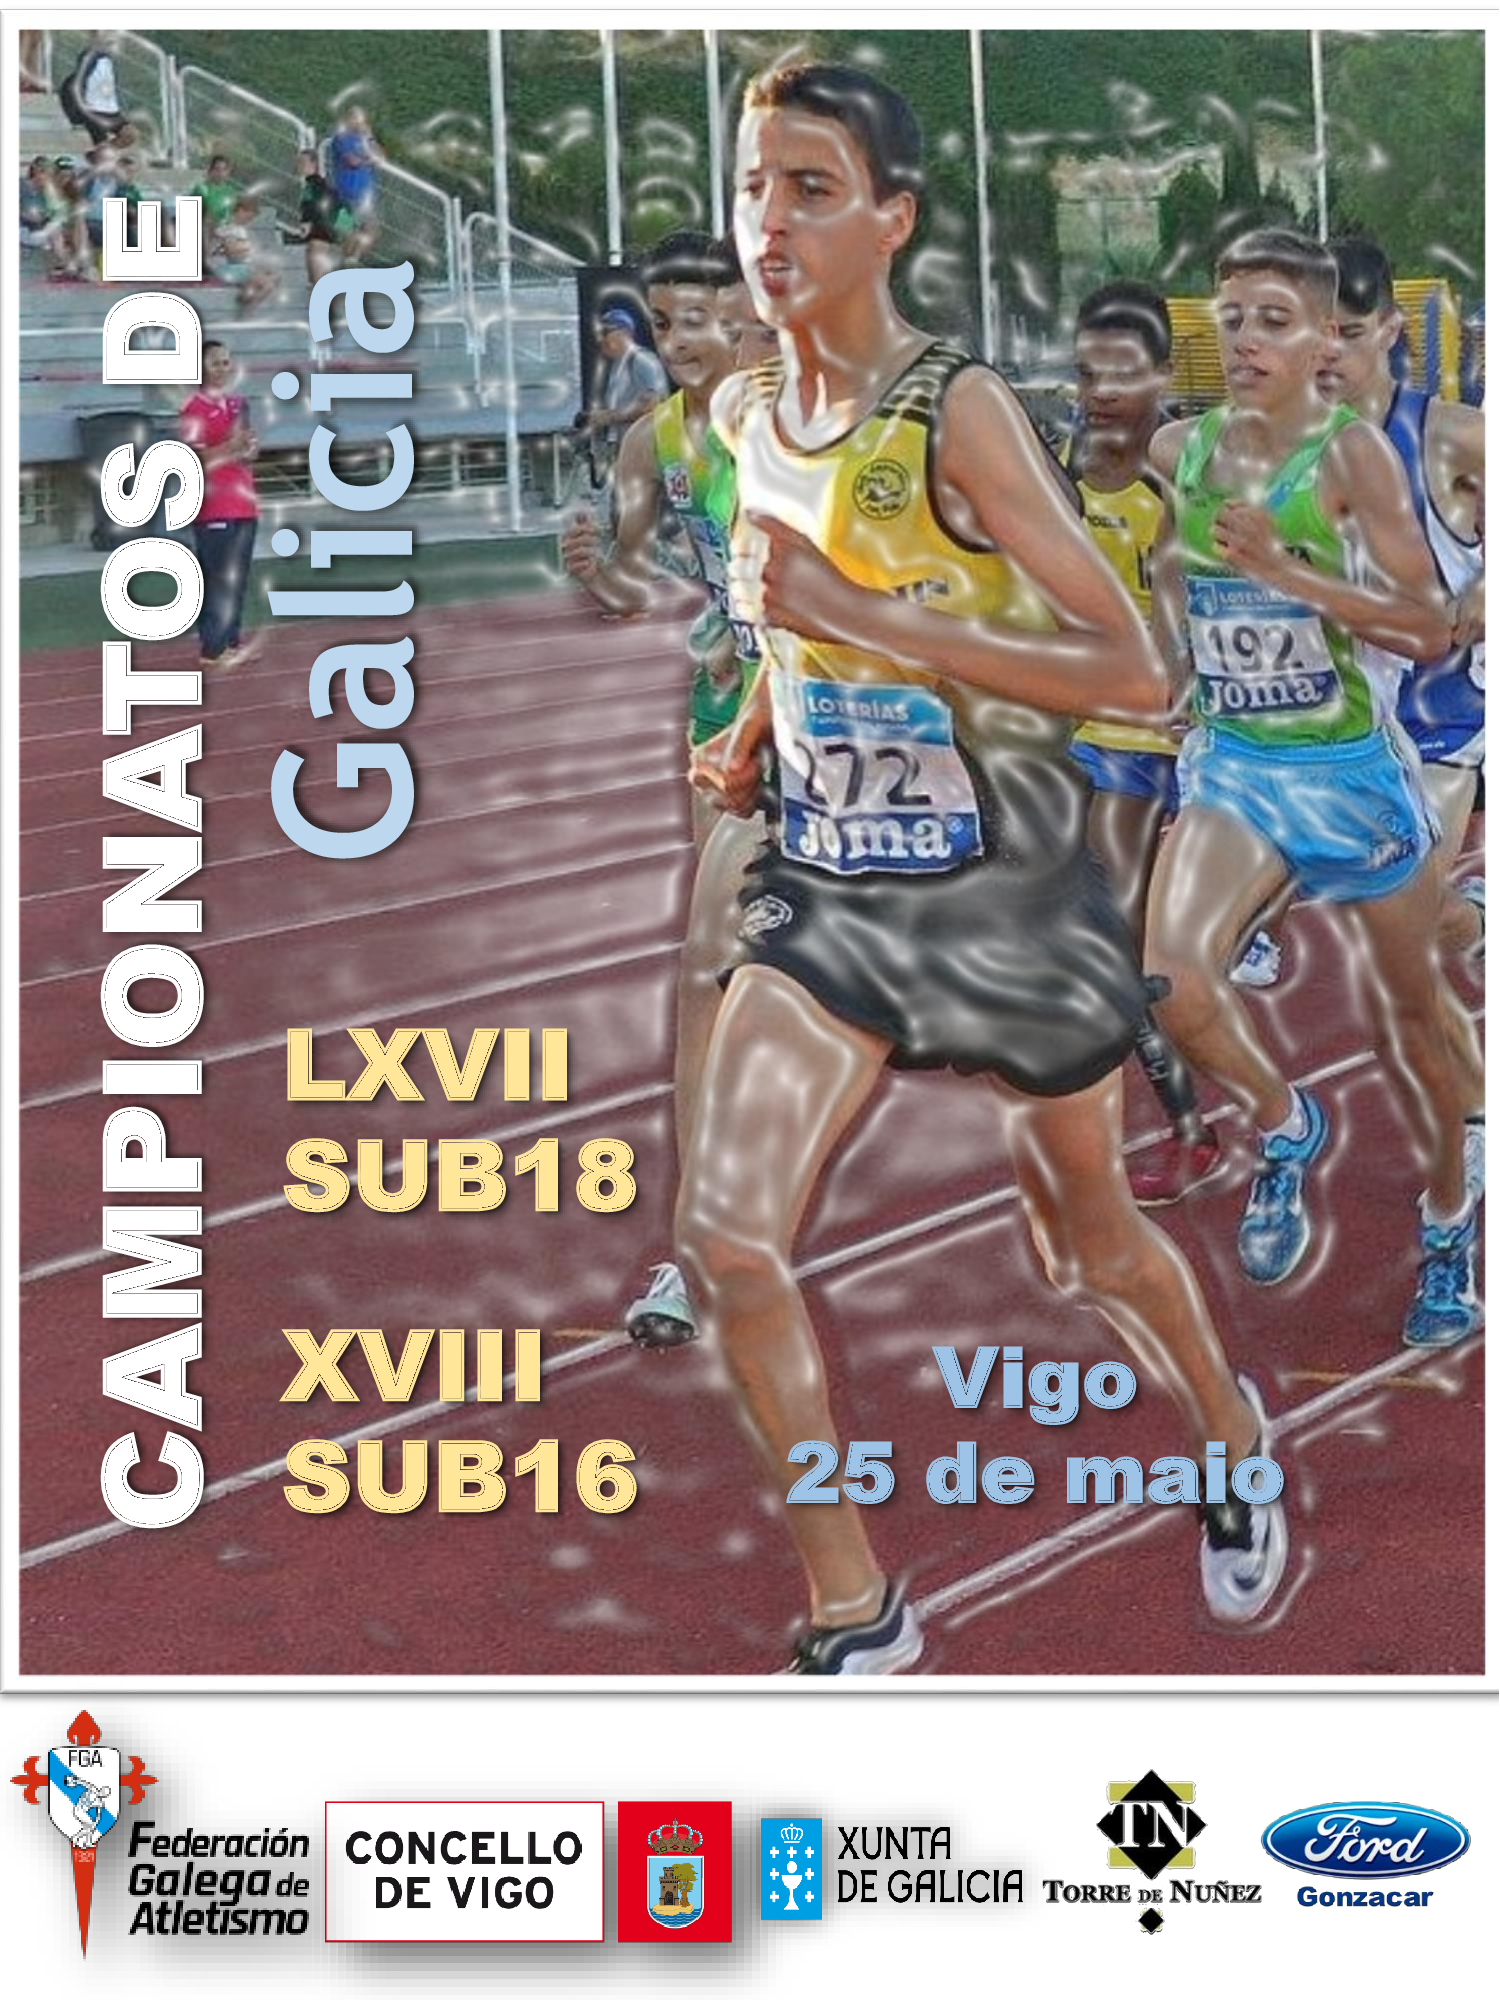 LXVII Campionato de Galicia Sub18 – XVIII Campionato de Galicia Sub16 en Pista ao Aire Libre